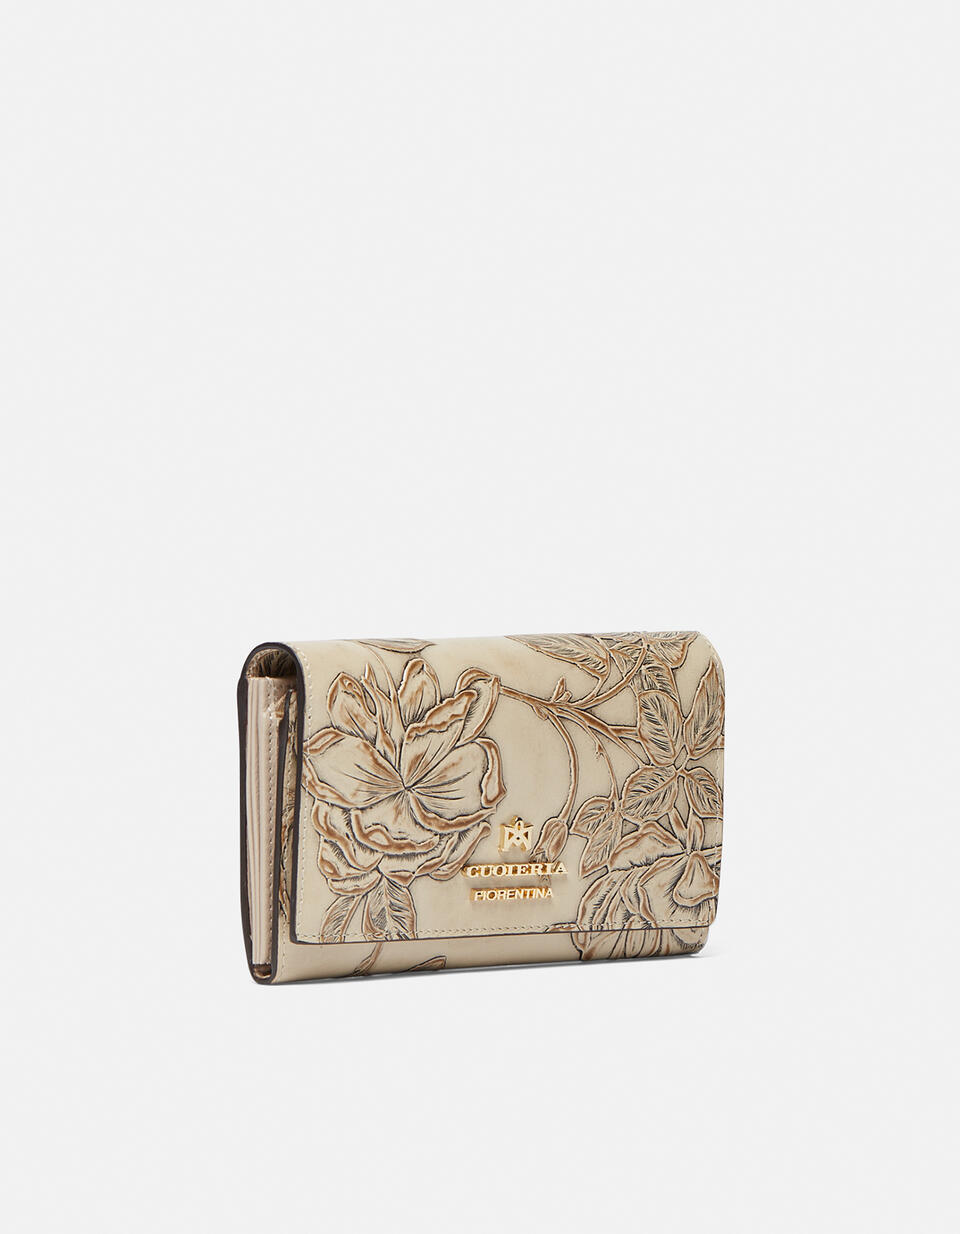 Accordian style wallet - Women's Wallets - Women's Wallets | Wallets Mimì TAUPE - Women's Wallets - Women's Wallets | WalletsCuoieria Fiorentina